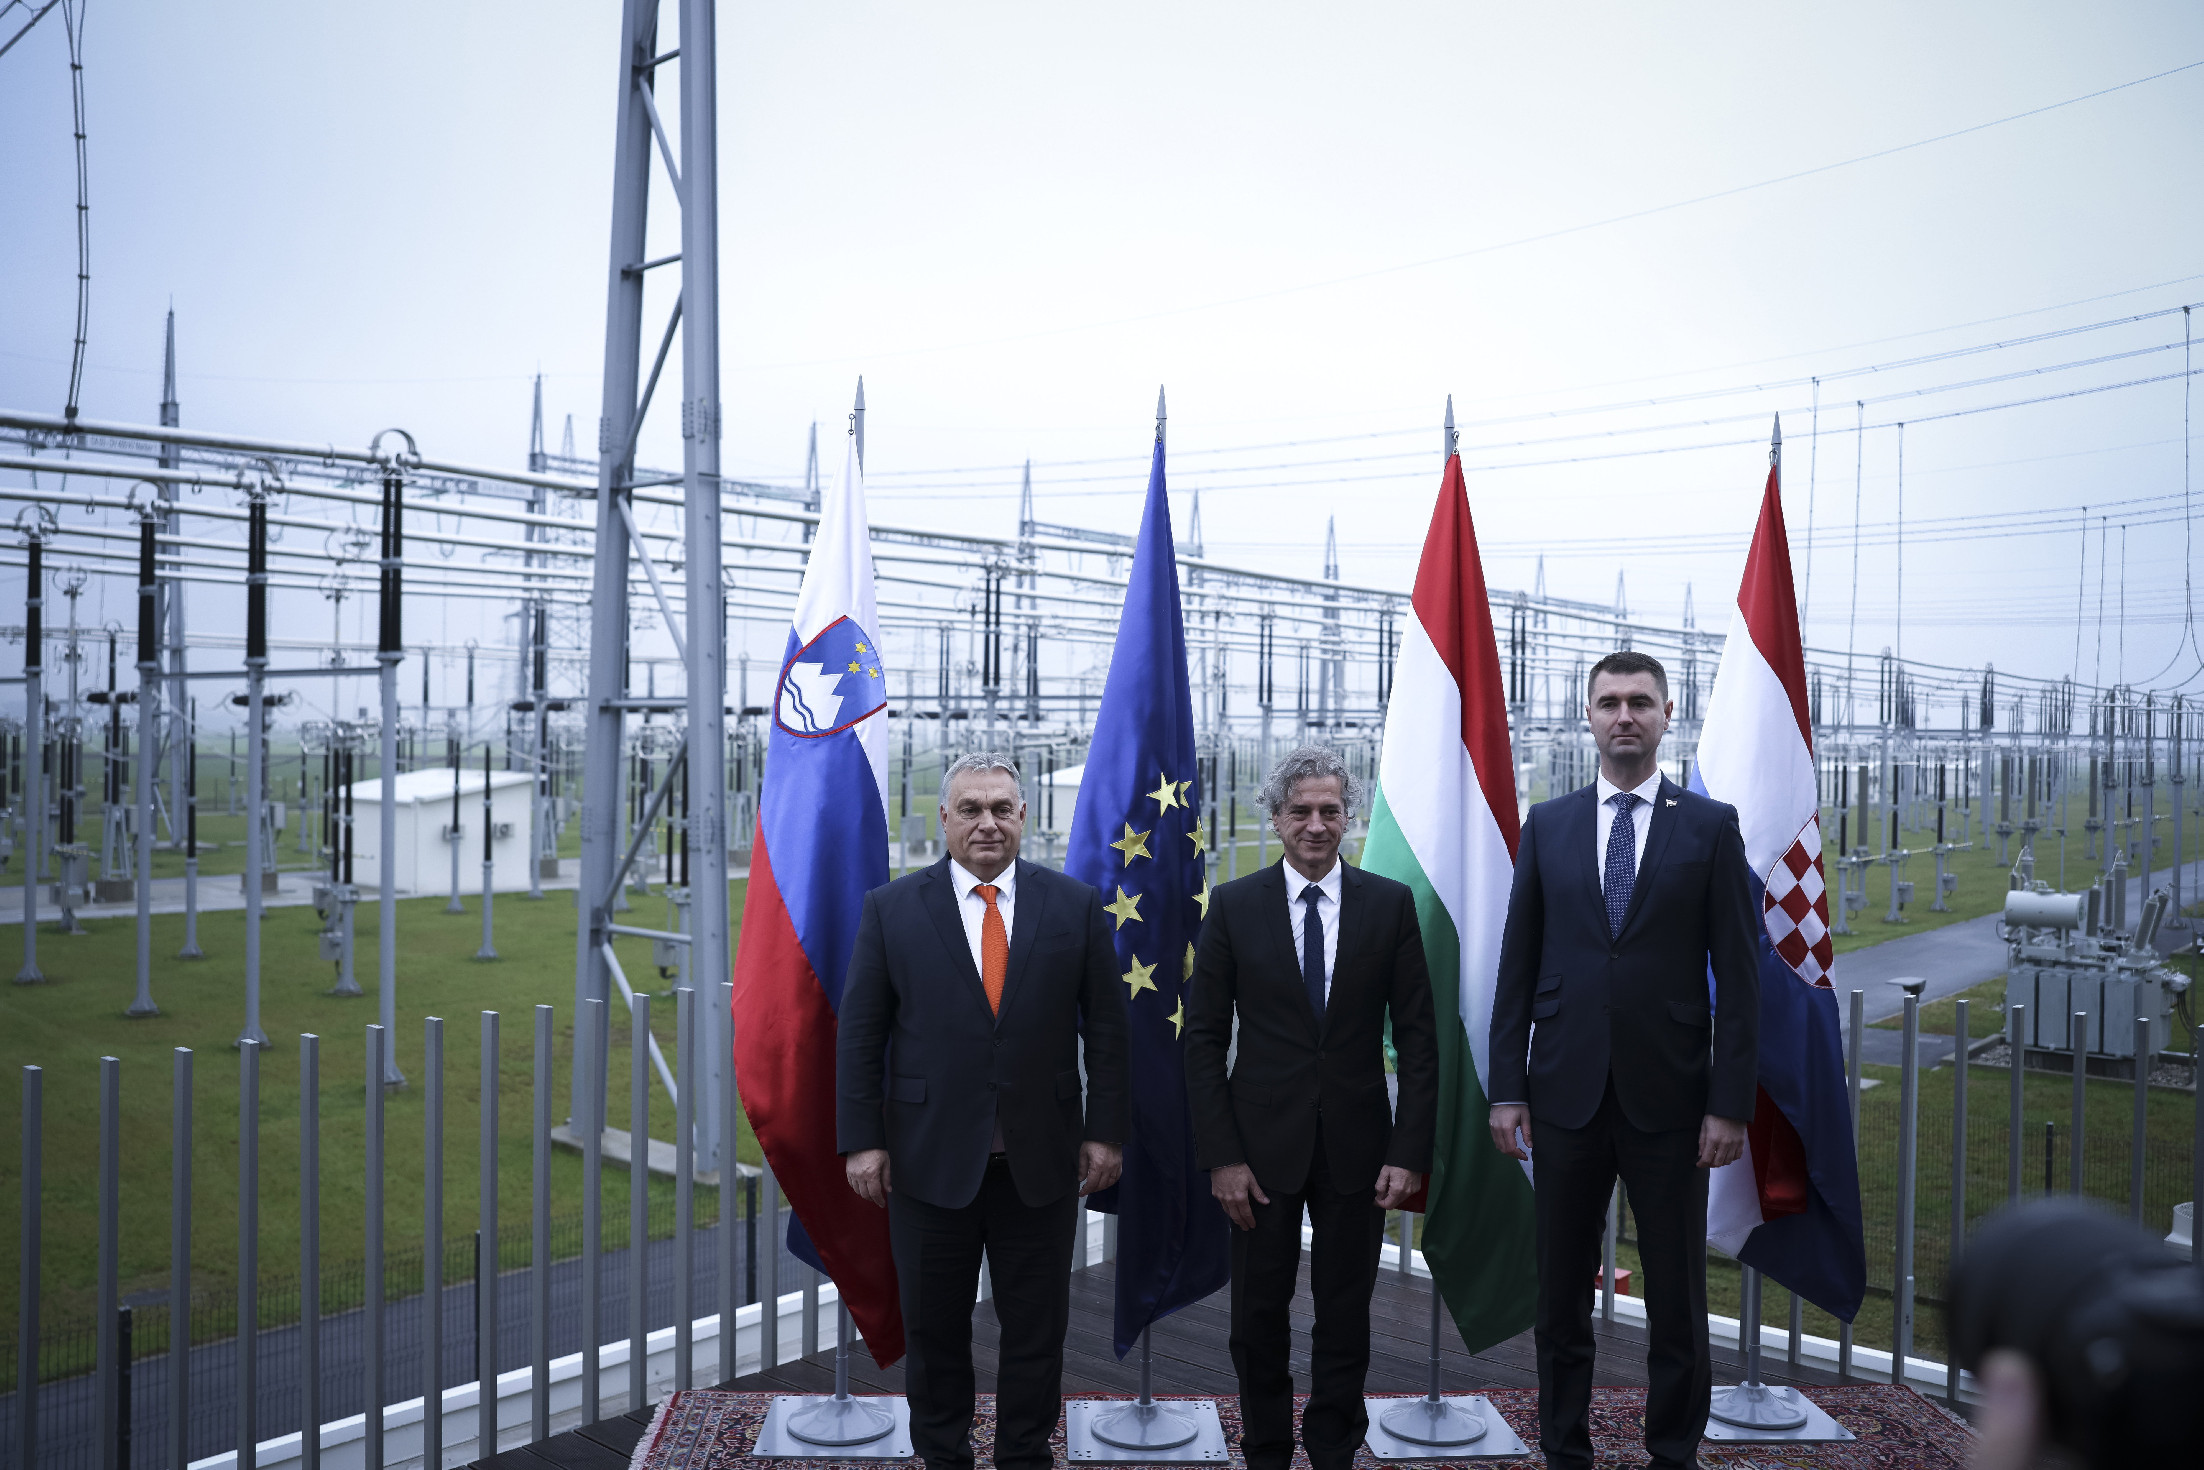 Orbán Viktornak egy villanyvezetékről a jövőbe vetett remény jutott az eszébe